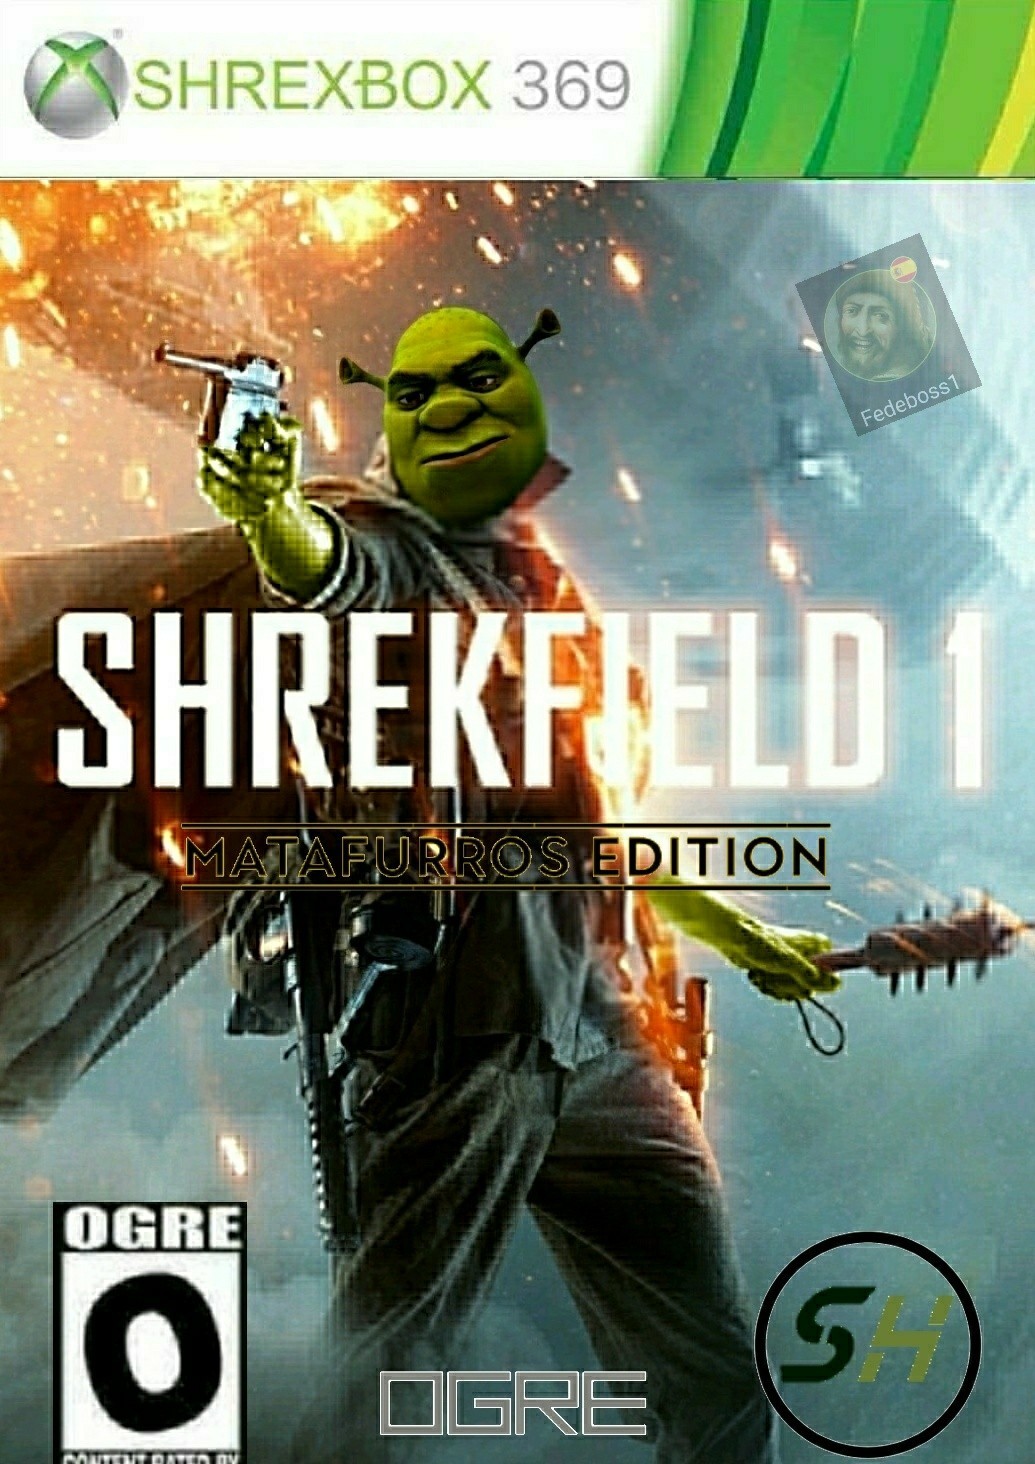 Viva Shrek - meme